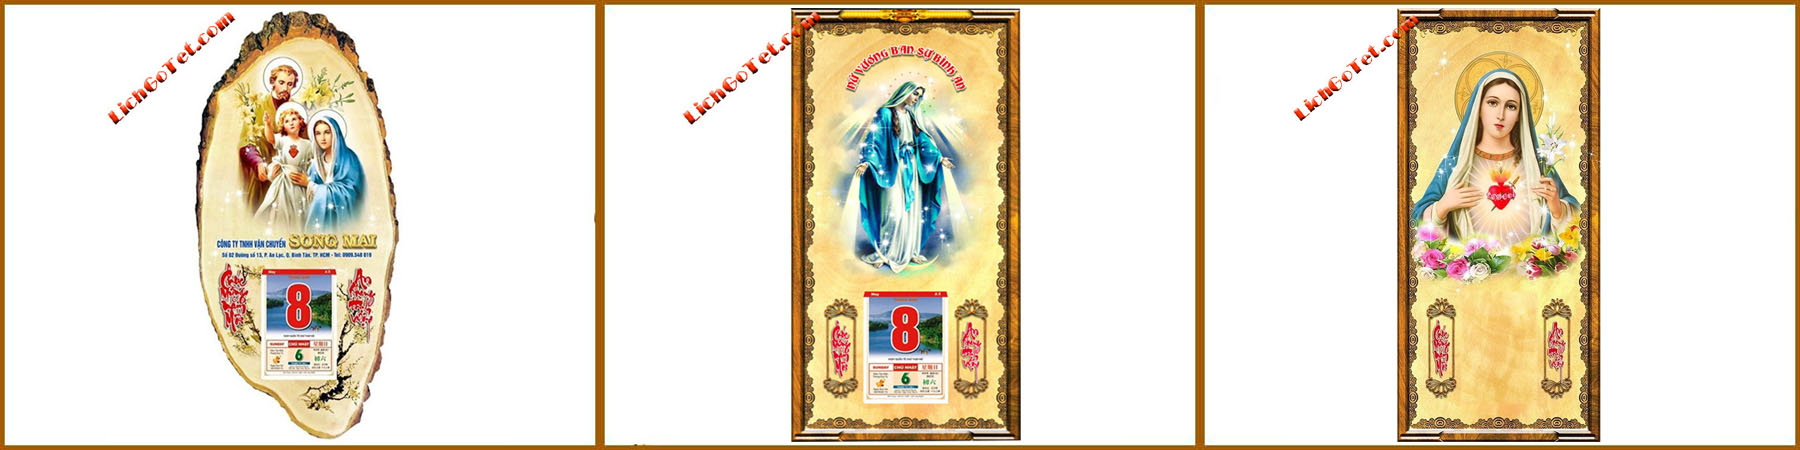 lịch gỗ tôn giáo đức mẹ maria 1